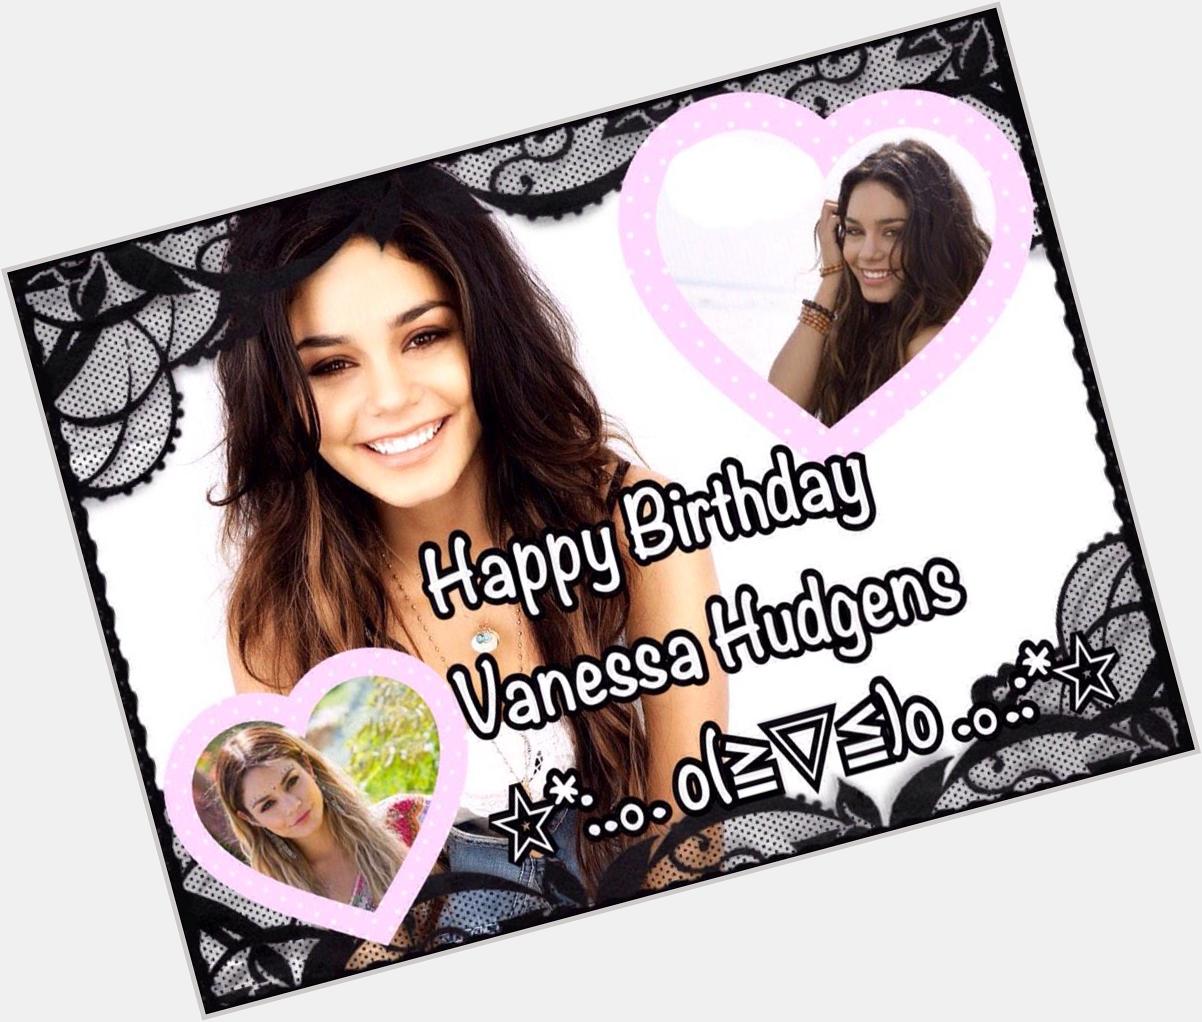    High School Musical        Vanessa Hudgens      *\(^o^)/*     o(   )o  
Happy Birthday Vanessa Hudgens  